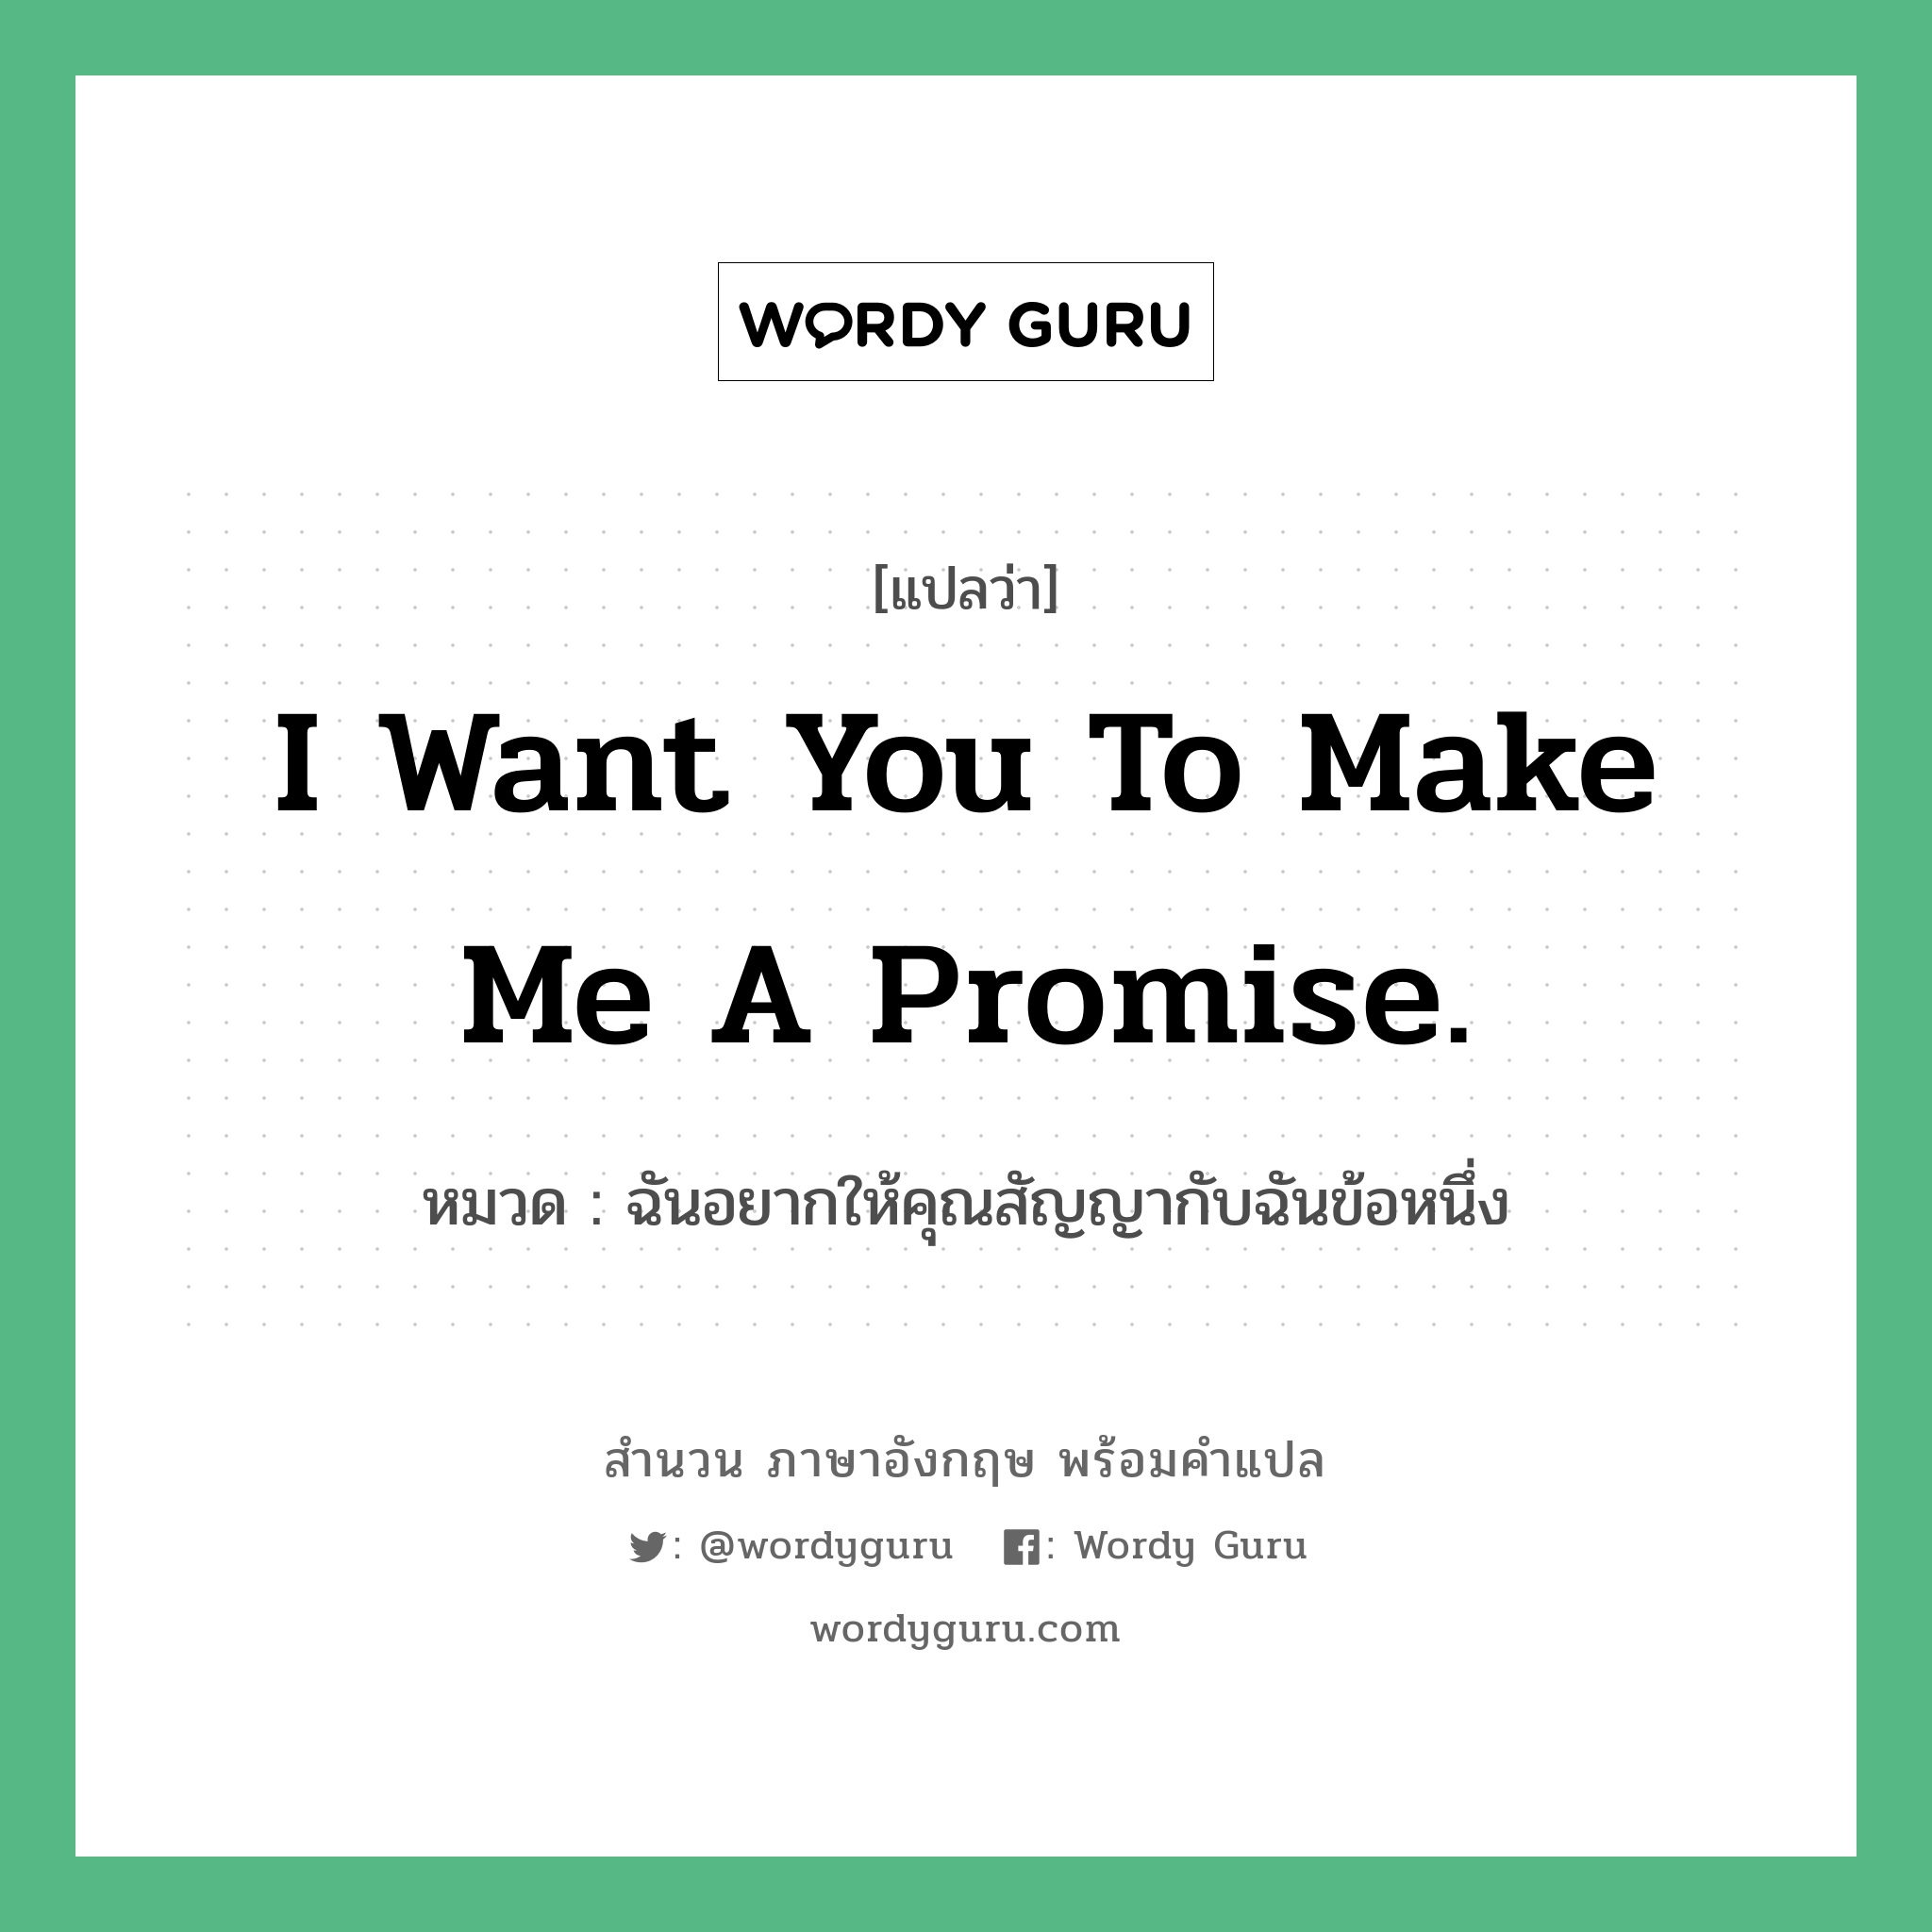 ฉันอยากให้คุณสัญญากับฉันข้อหนึ่ง ภาษาอังกฤษ?, สำนวนภาษาอังกฤษ ฉันอยากให้คุณสัญญากับฉันข้อหนึ่ง แปลว่า ฉันอยากให้คุณสัญญากับฉันข้อหนึ่ง หมวด I want you to make me a promise.